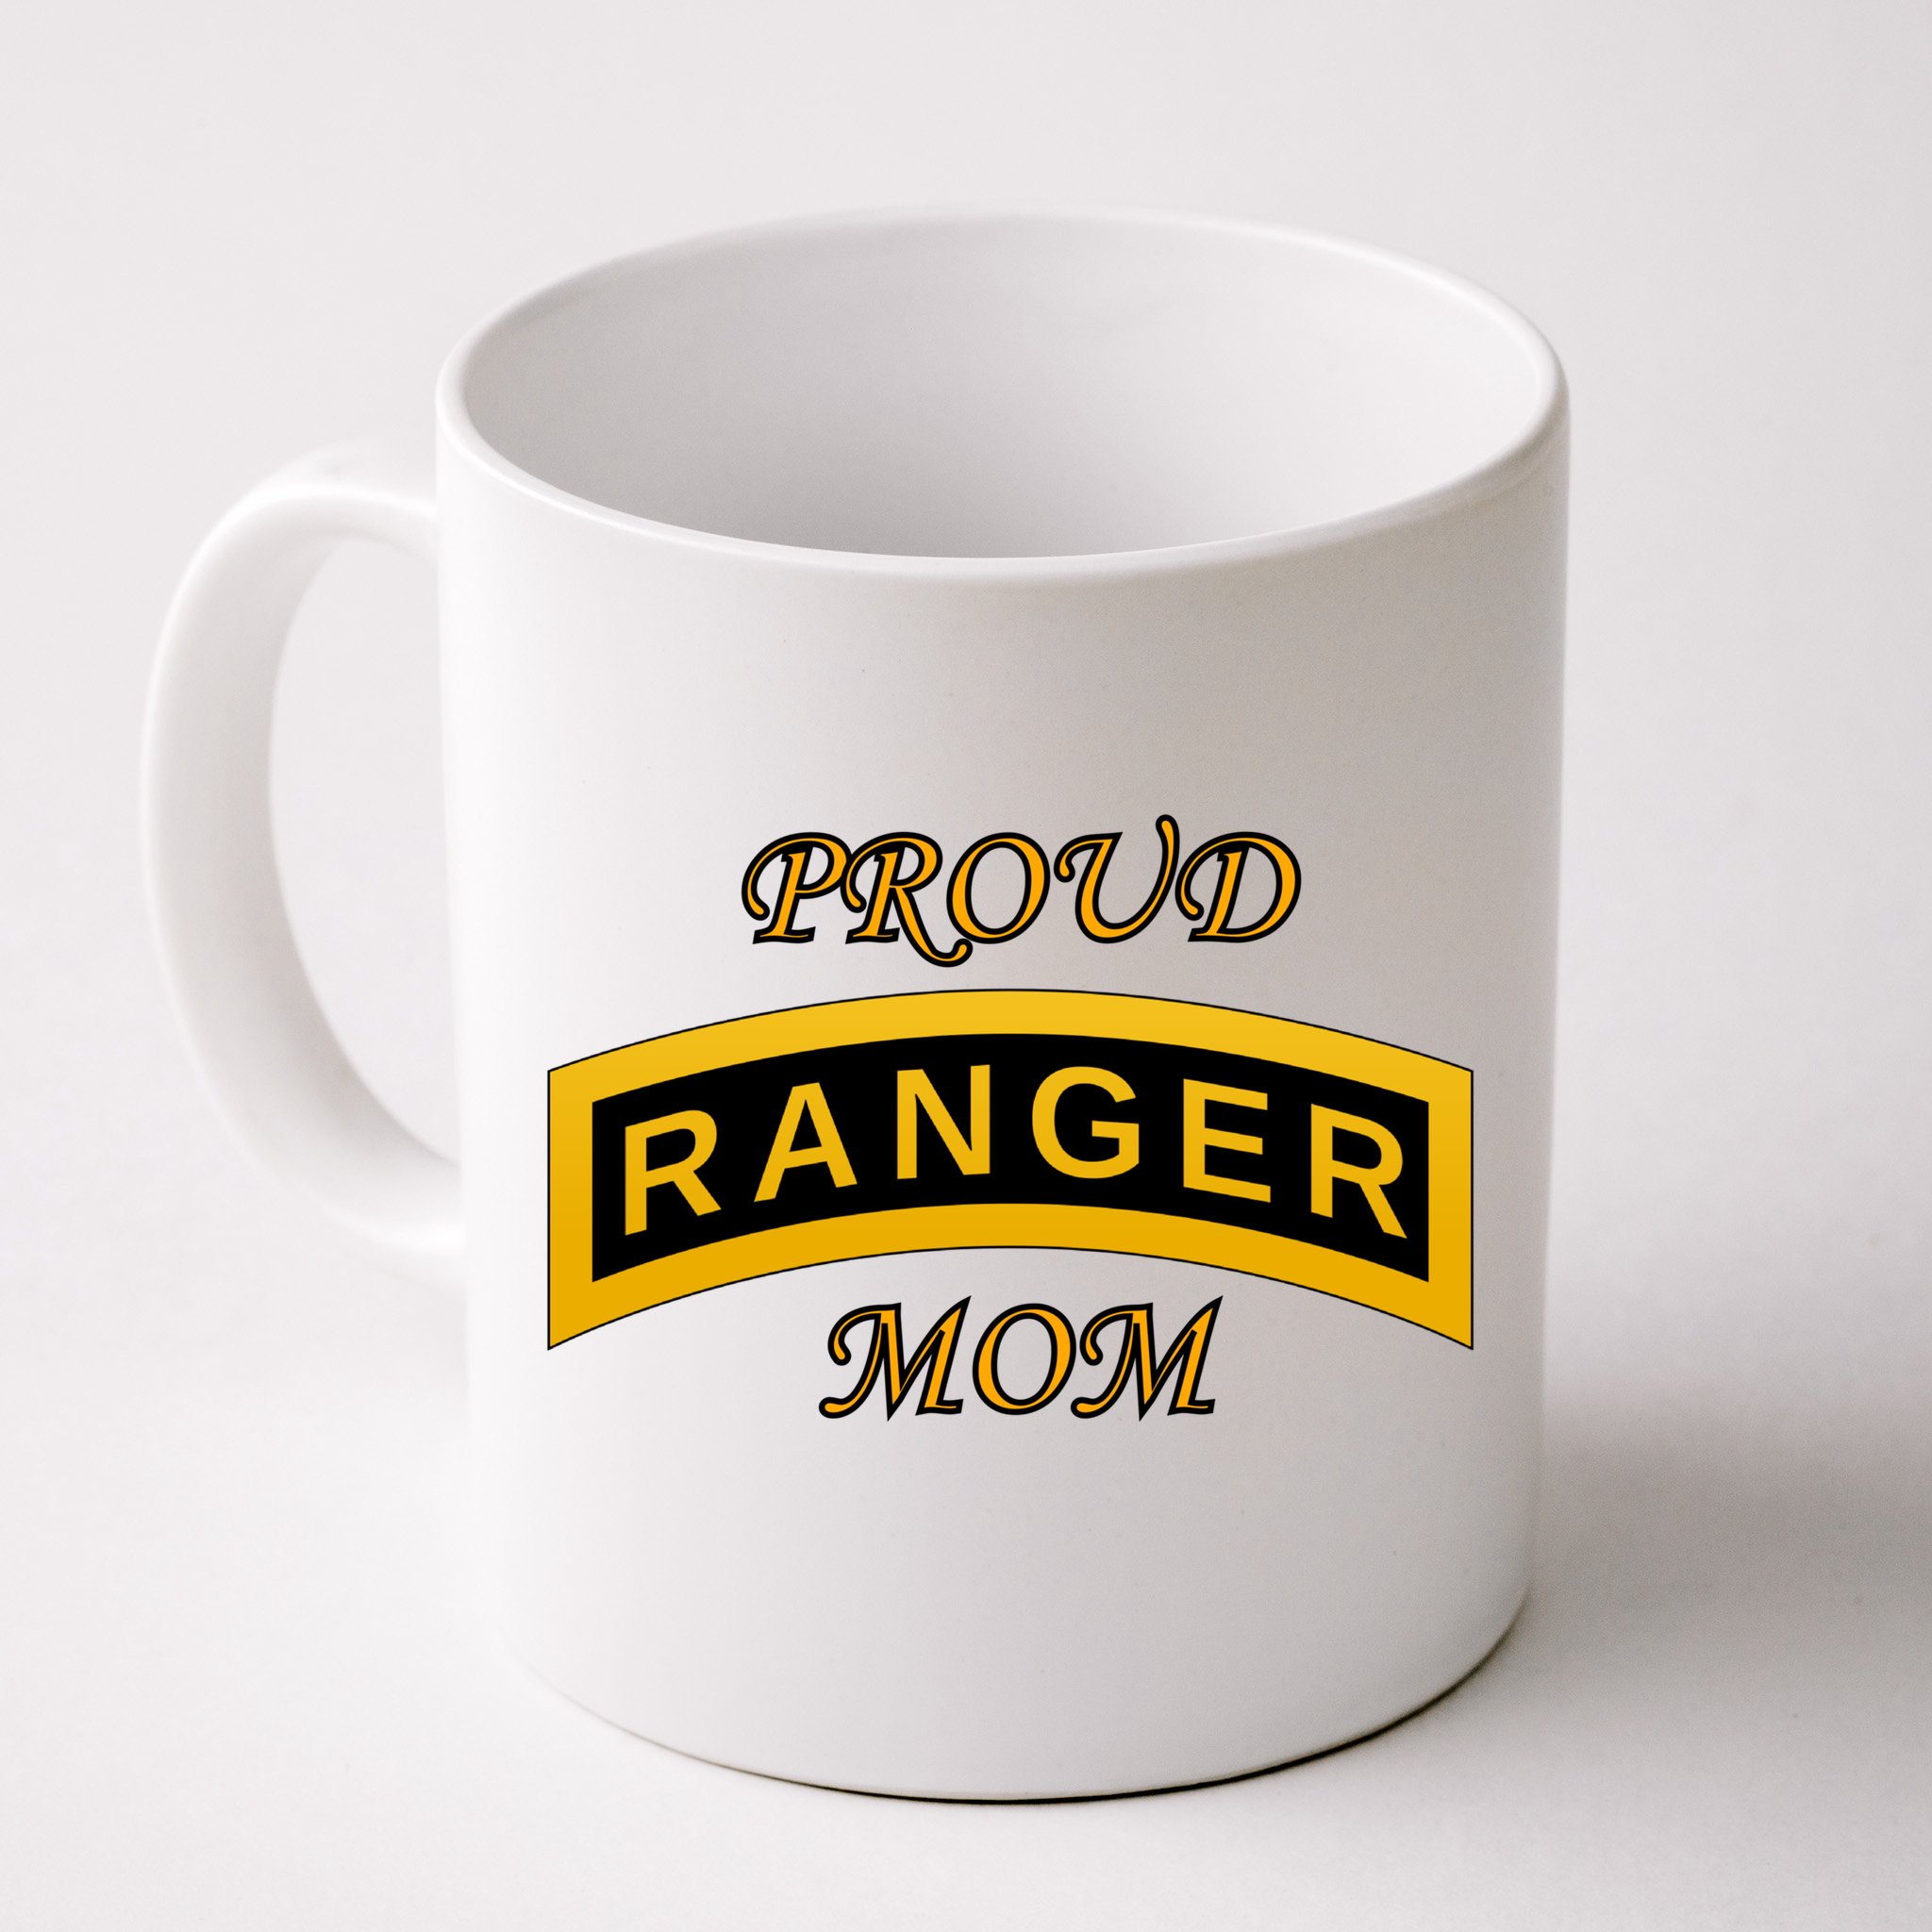 Ranger Tab Army Ranger Coffee Mug 